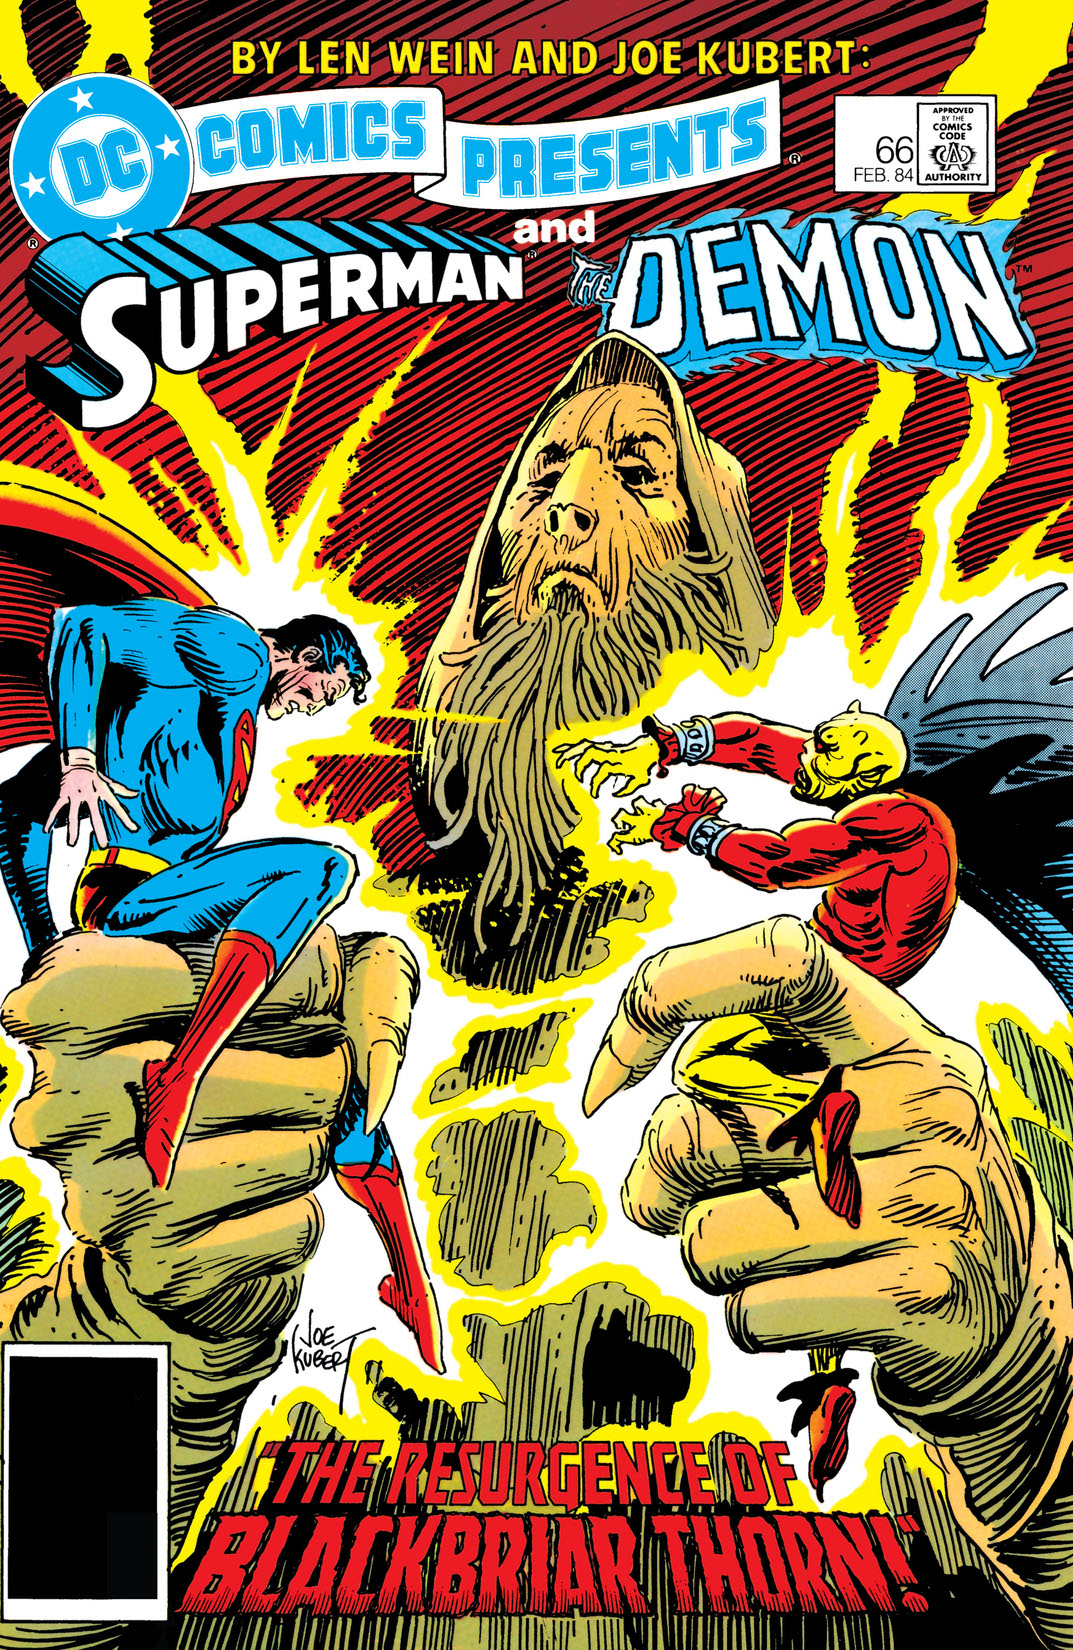 DC Comics Presents (1978-) #66 preview images